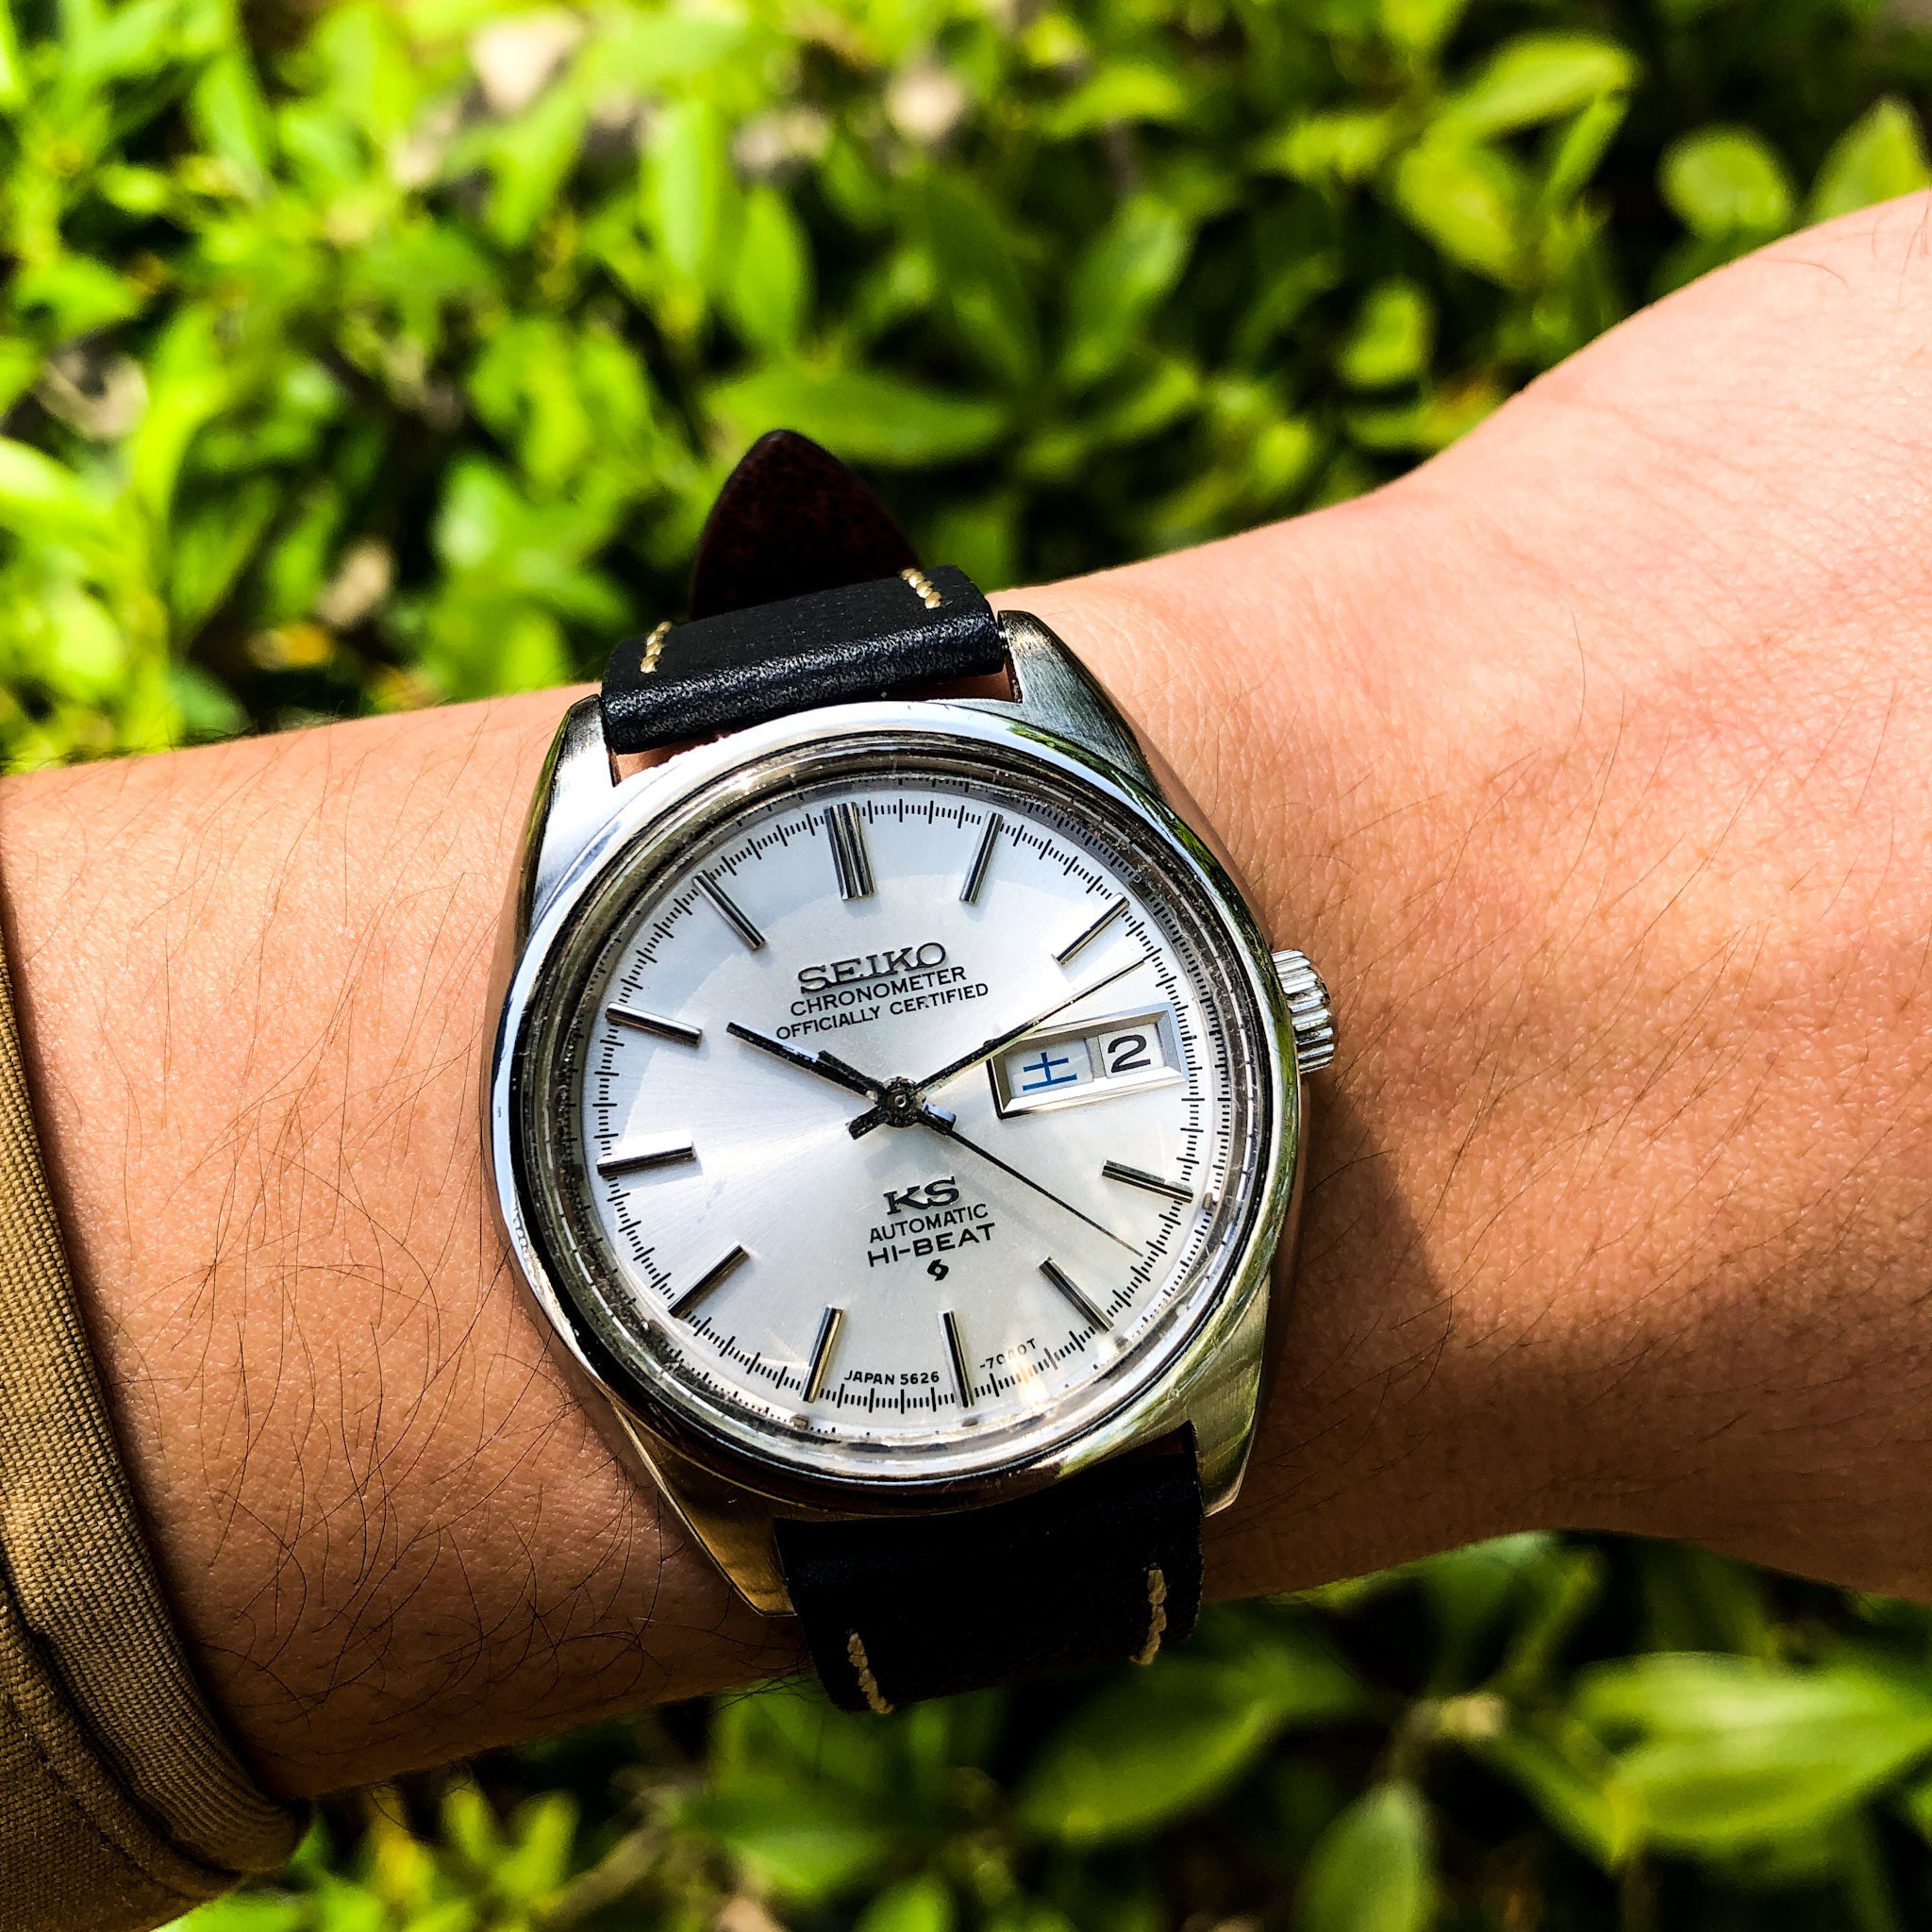 Vintage Watch | King Seiko 5626 Chronometer - Samurai Vintage Co.